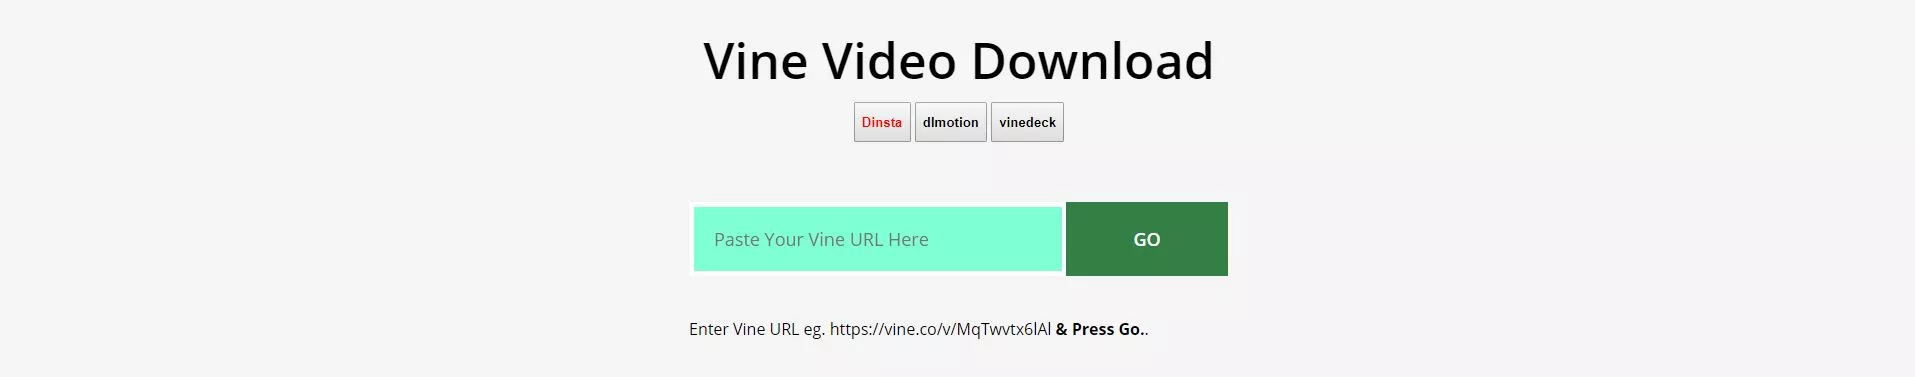 VineVideoDownload Download Vine Videos